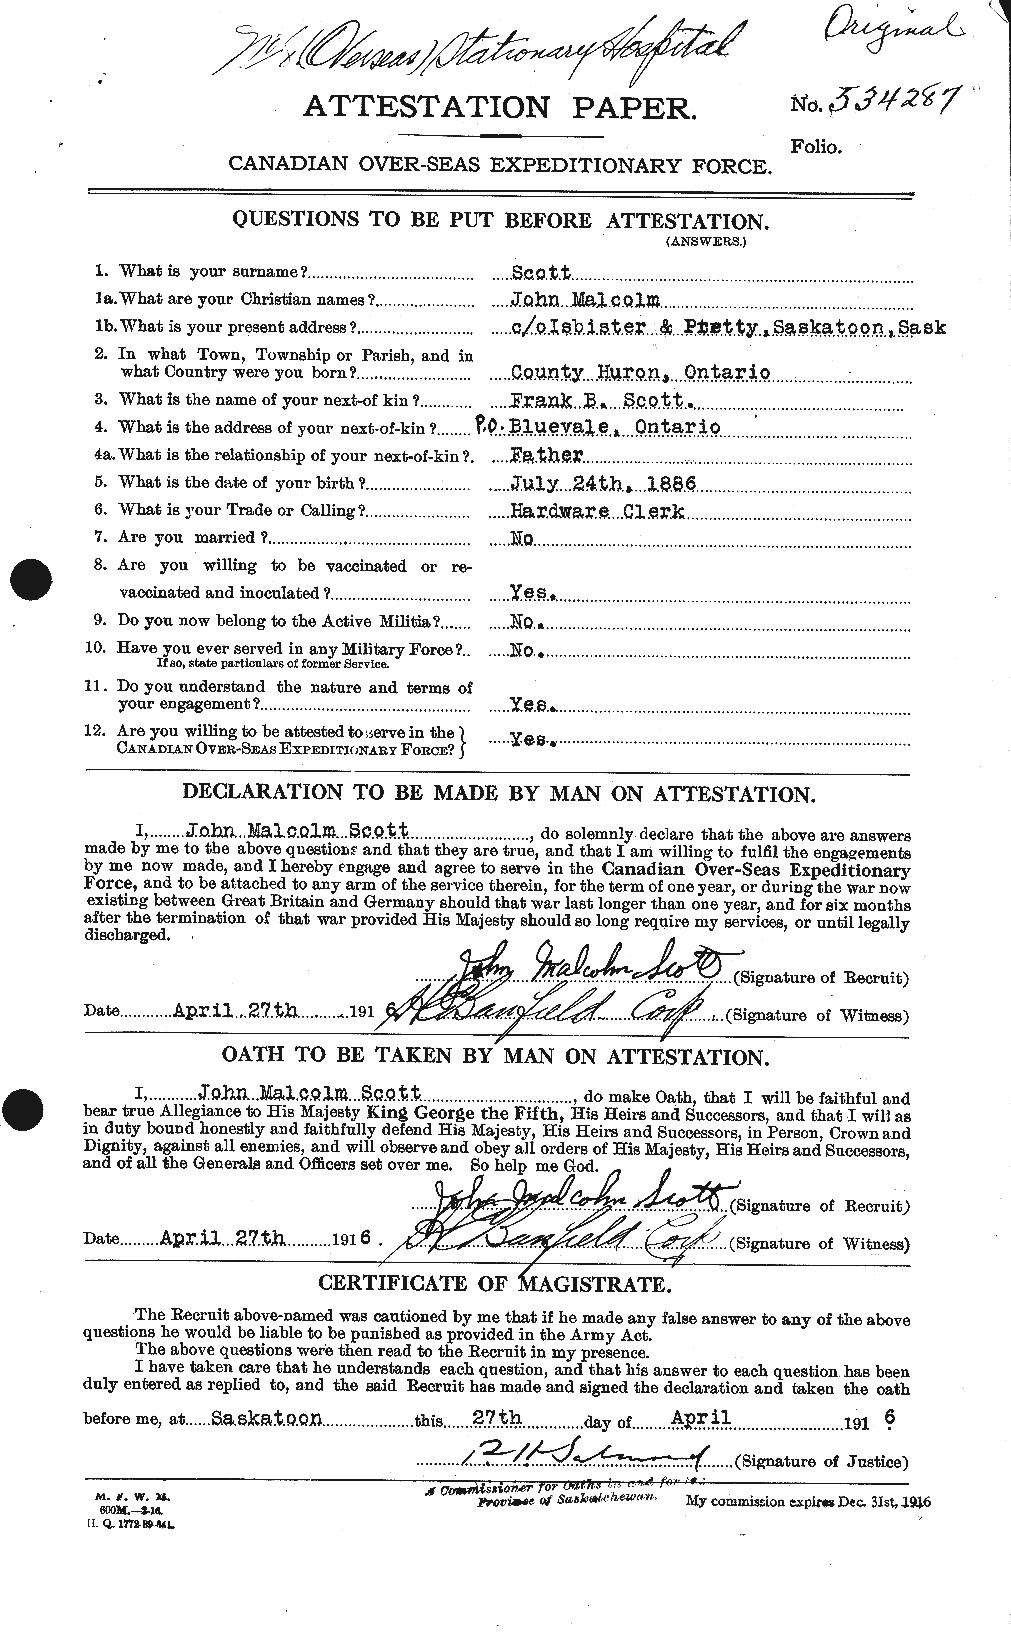 Dossiers du Personnel de la Première Guerre mondiale - CEC 084443a